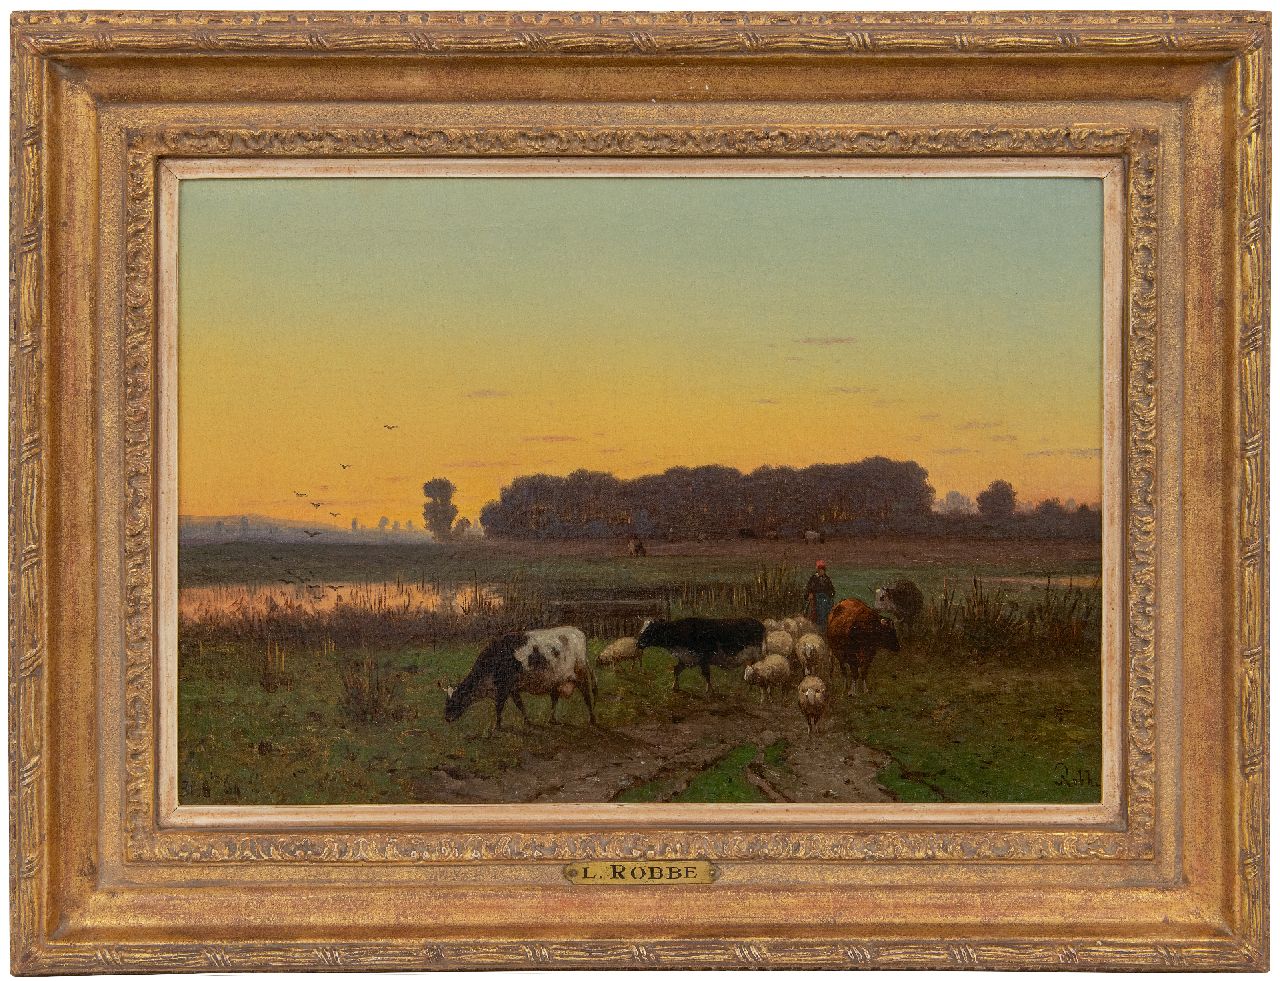 Robbe H.A.  | Henri Alexander Robbe | Schilderijen te koop aangeboden | Herderin en vee op weg naar huis, olieverf op doek 34,1 x 49,8 cm, gesigneerd rechtsonder